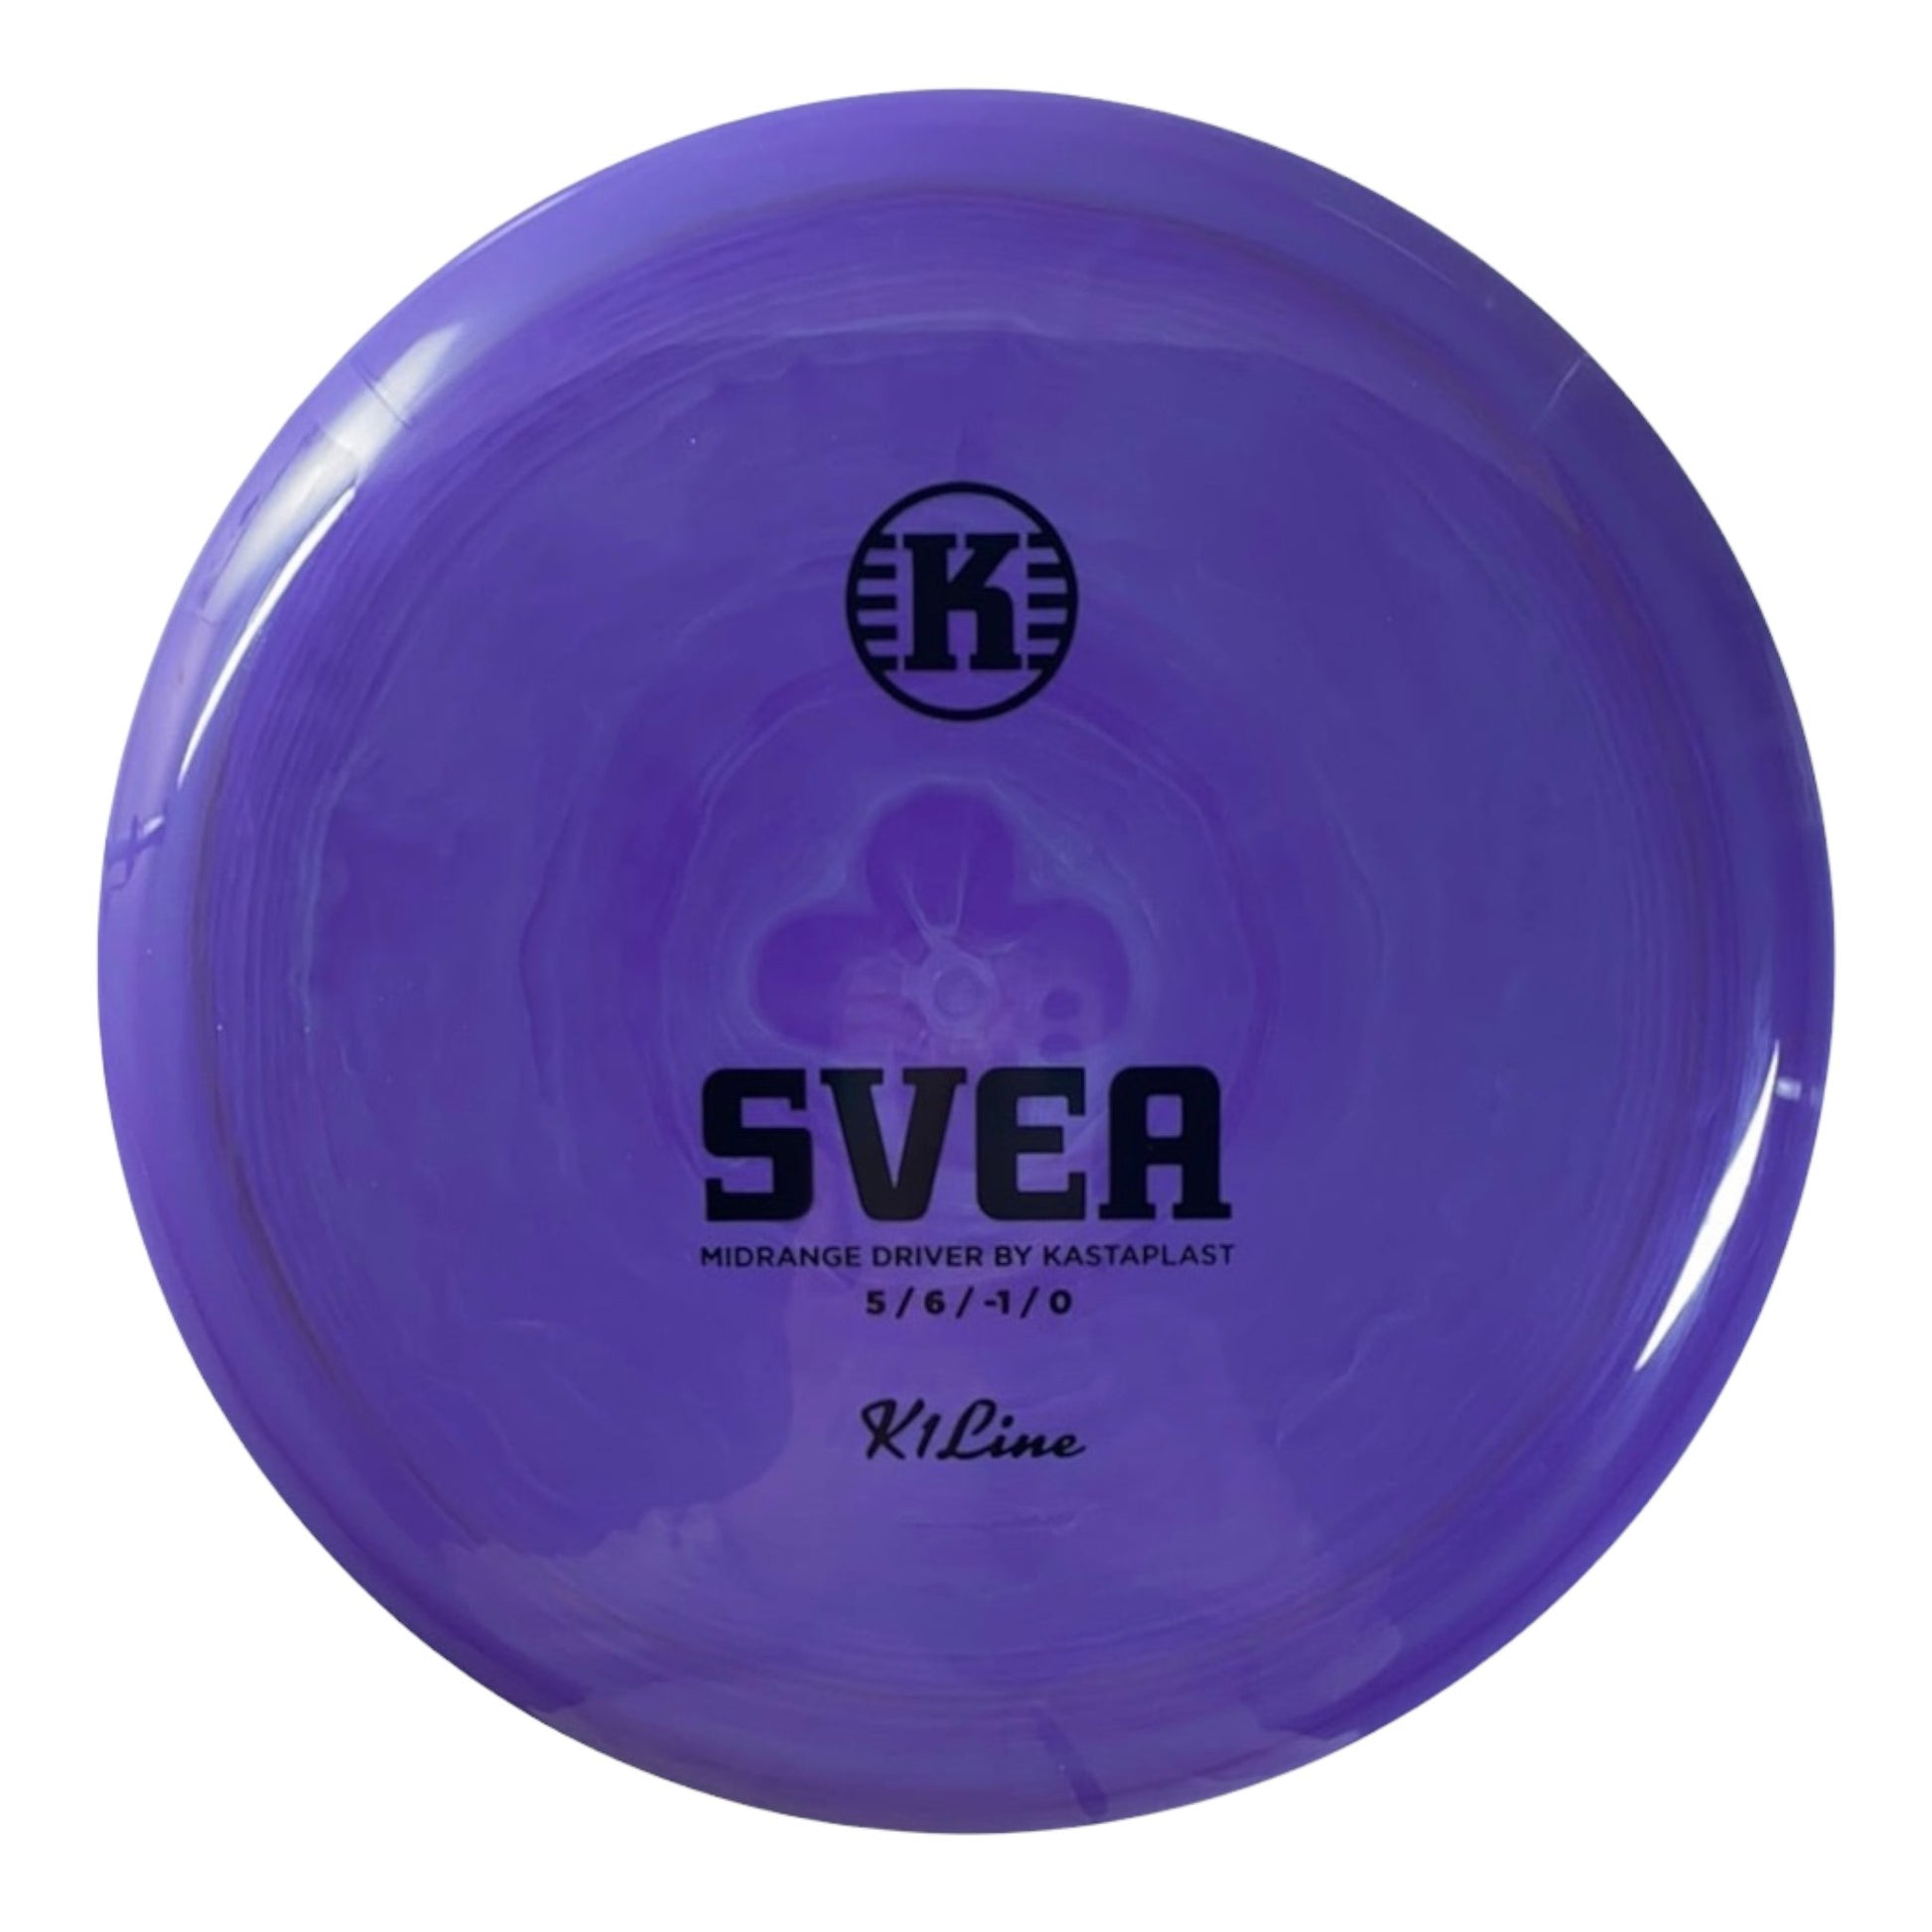 Kastaplast Svea | K1 | Purple/Black 175g Disc Golf